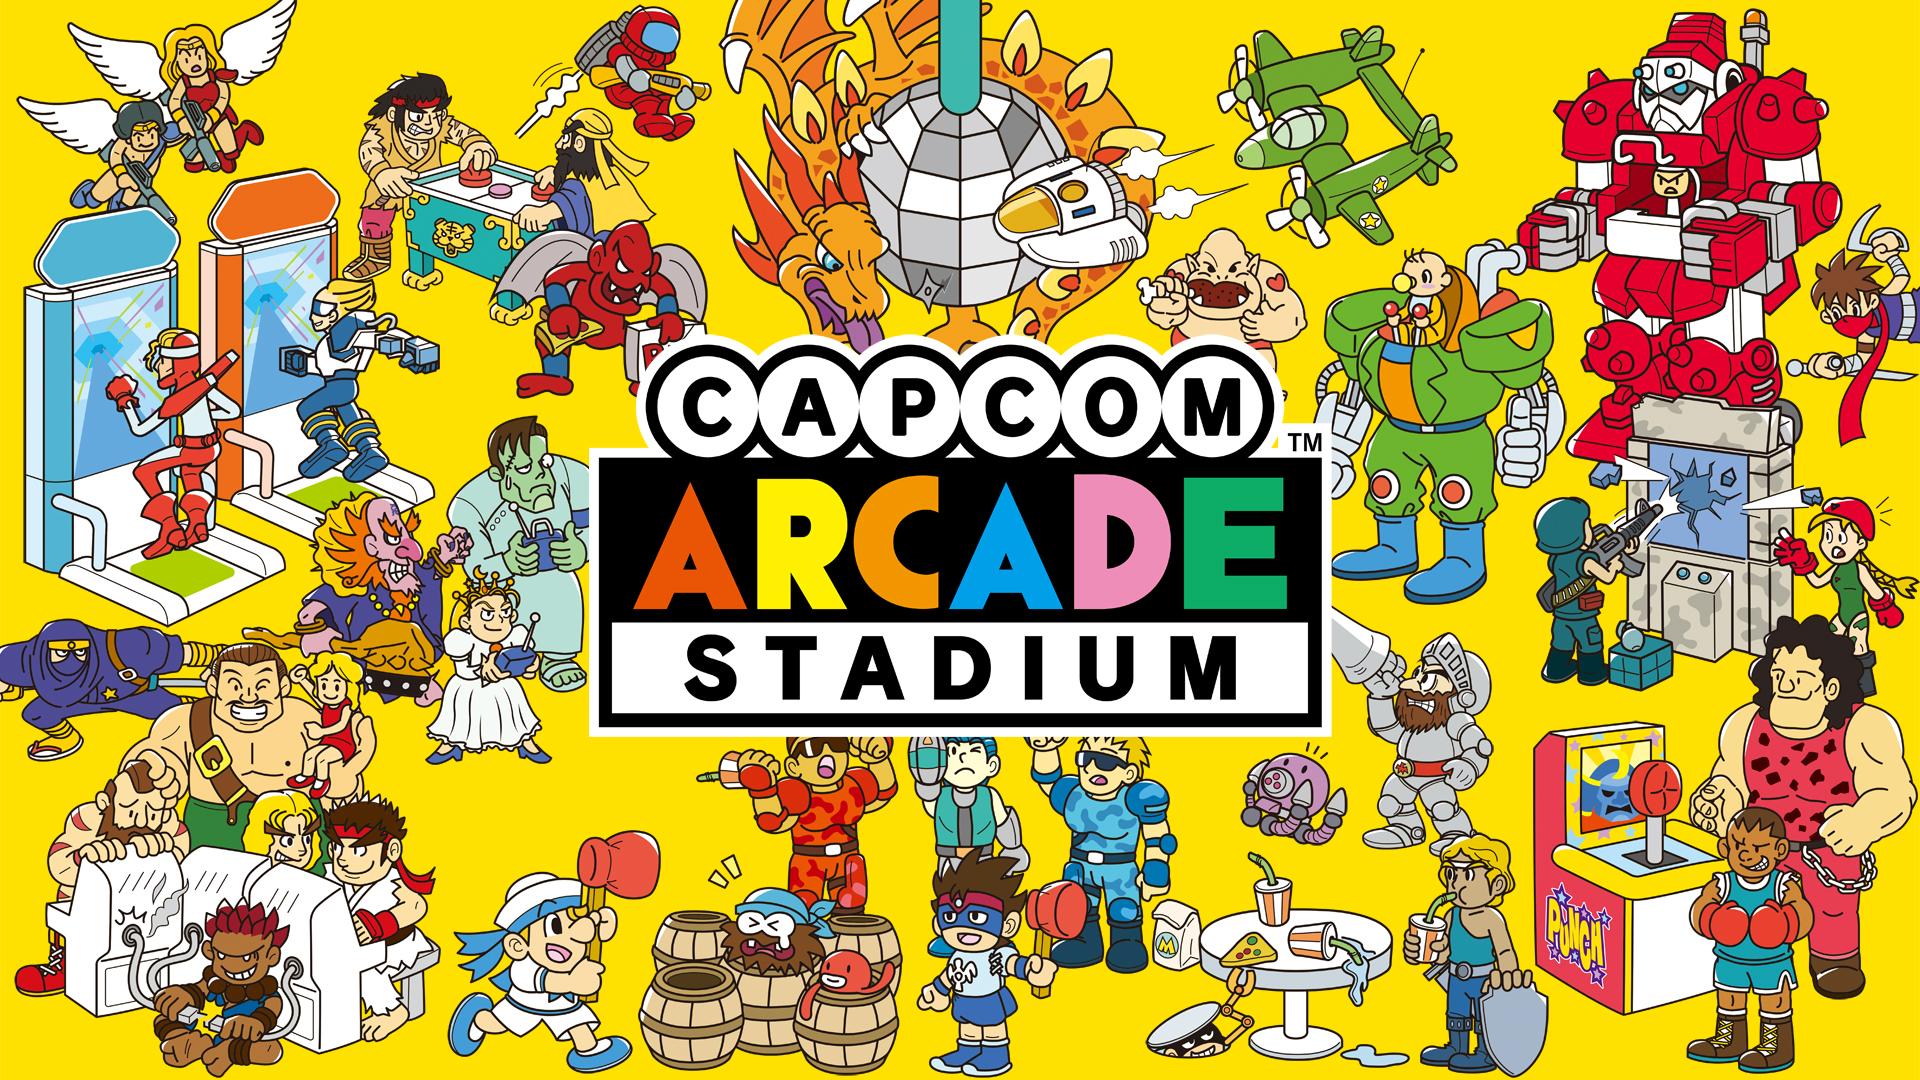 Capcom Arcade Stadium Nintendo Switch for Free